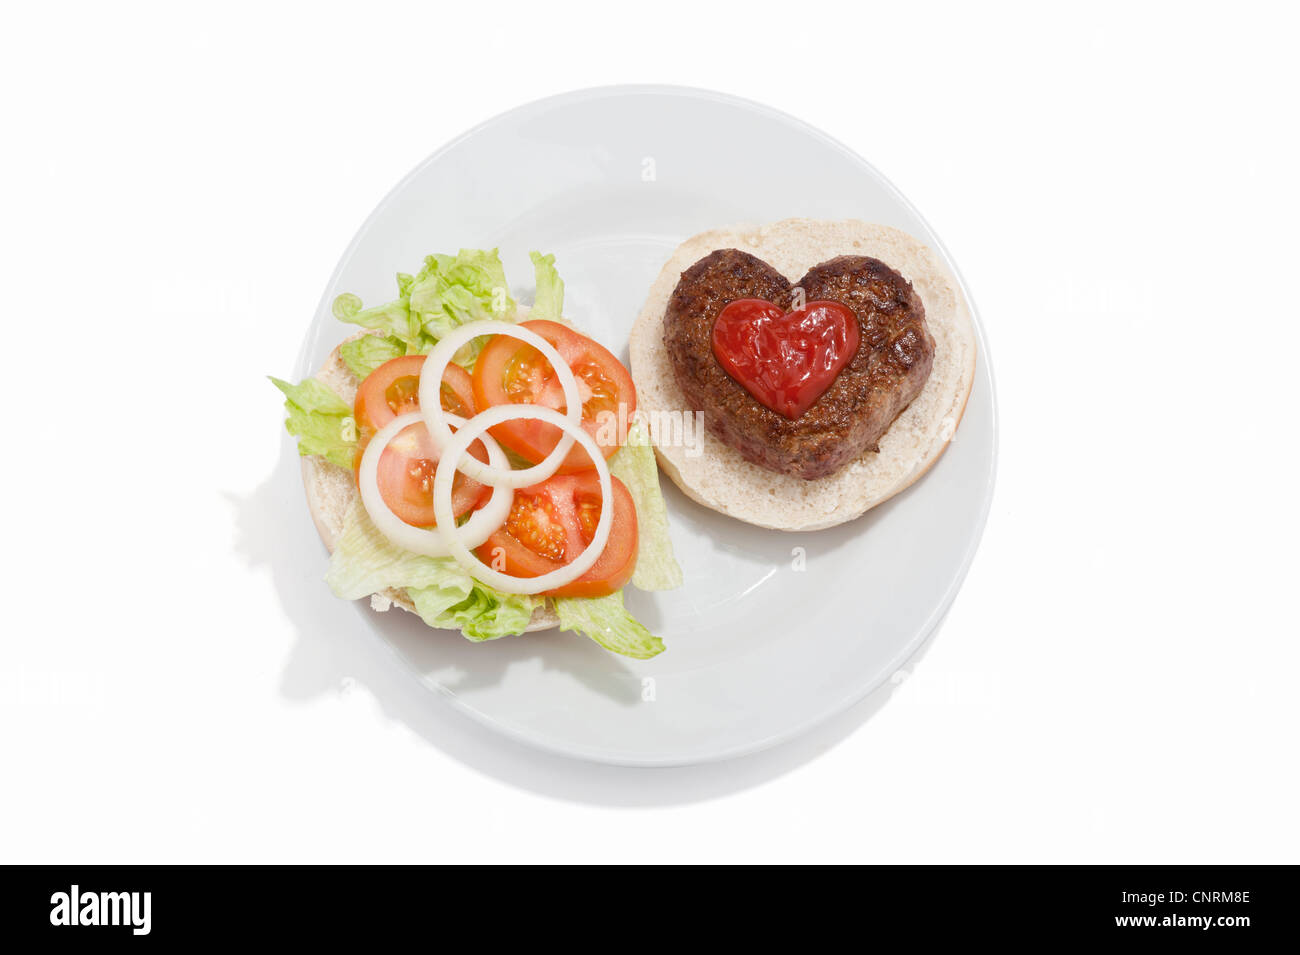 Eine herzförmige Beef-Burger auf einem Brötchen mit Tomatensauce und einem Beilagensalat Stockfoto